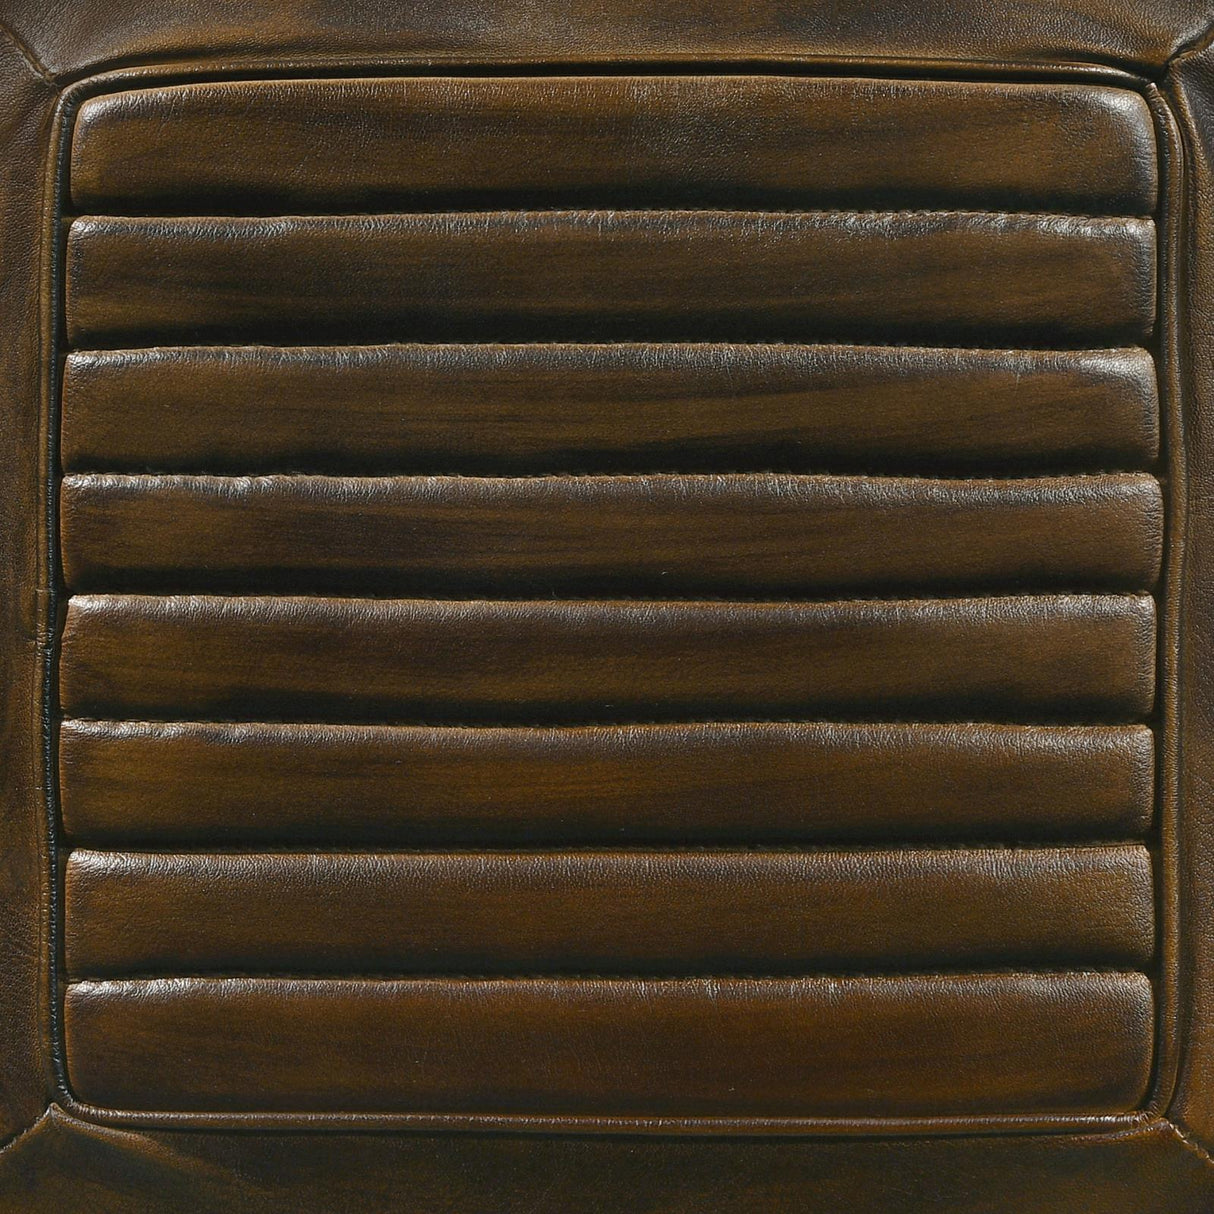 Alvaro Leather Upholstered Backless Bar Stool Antique Brown and Black (Set of 2) - 109079 - Luna Furniture